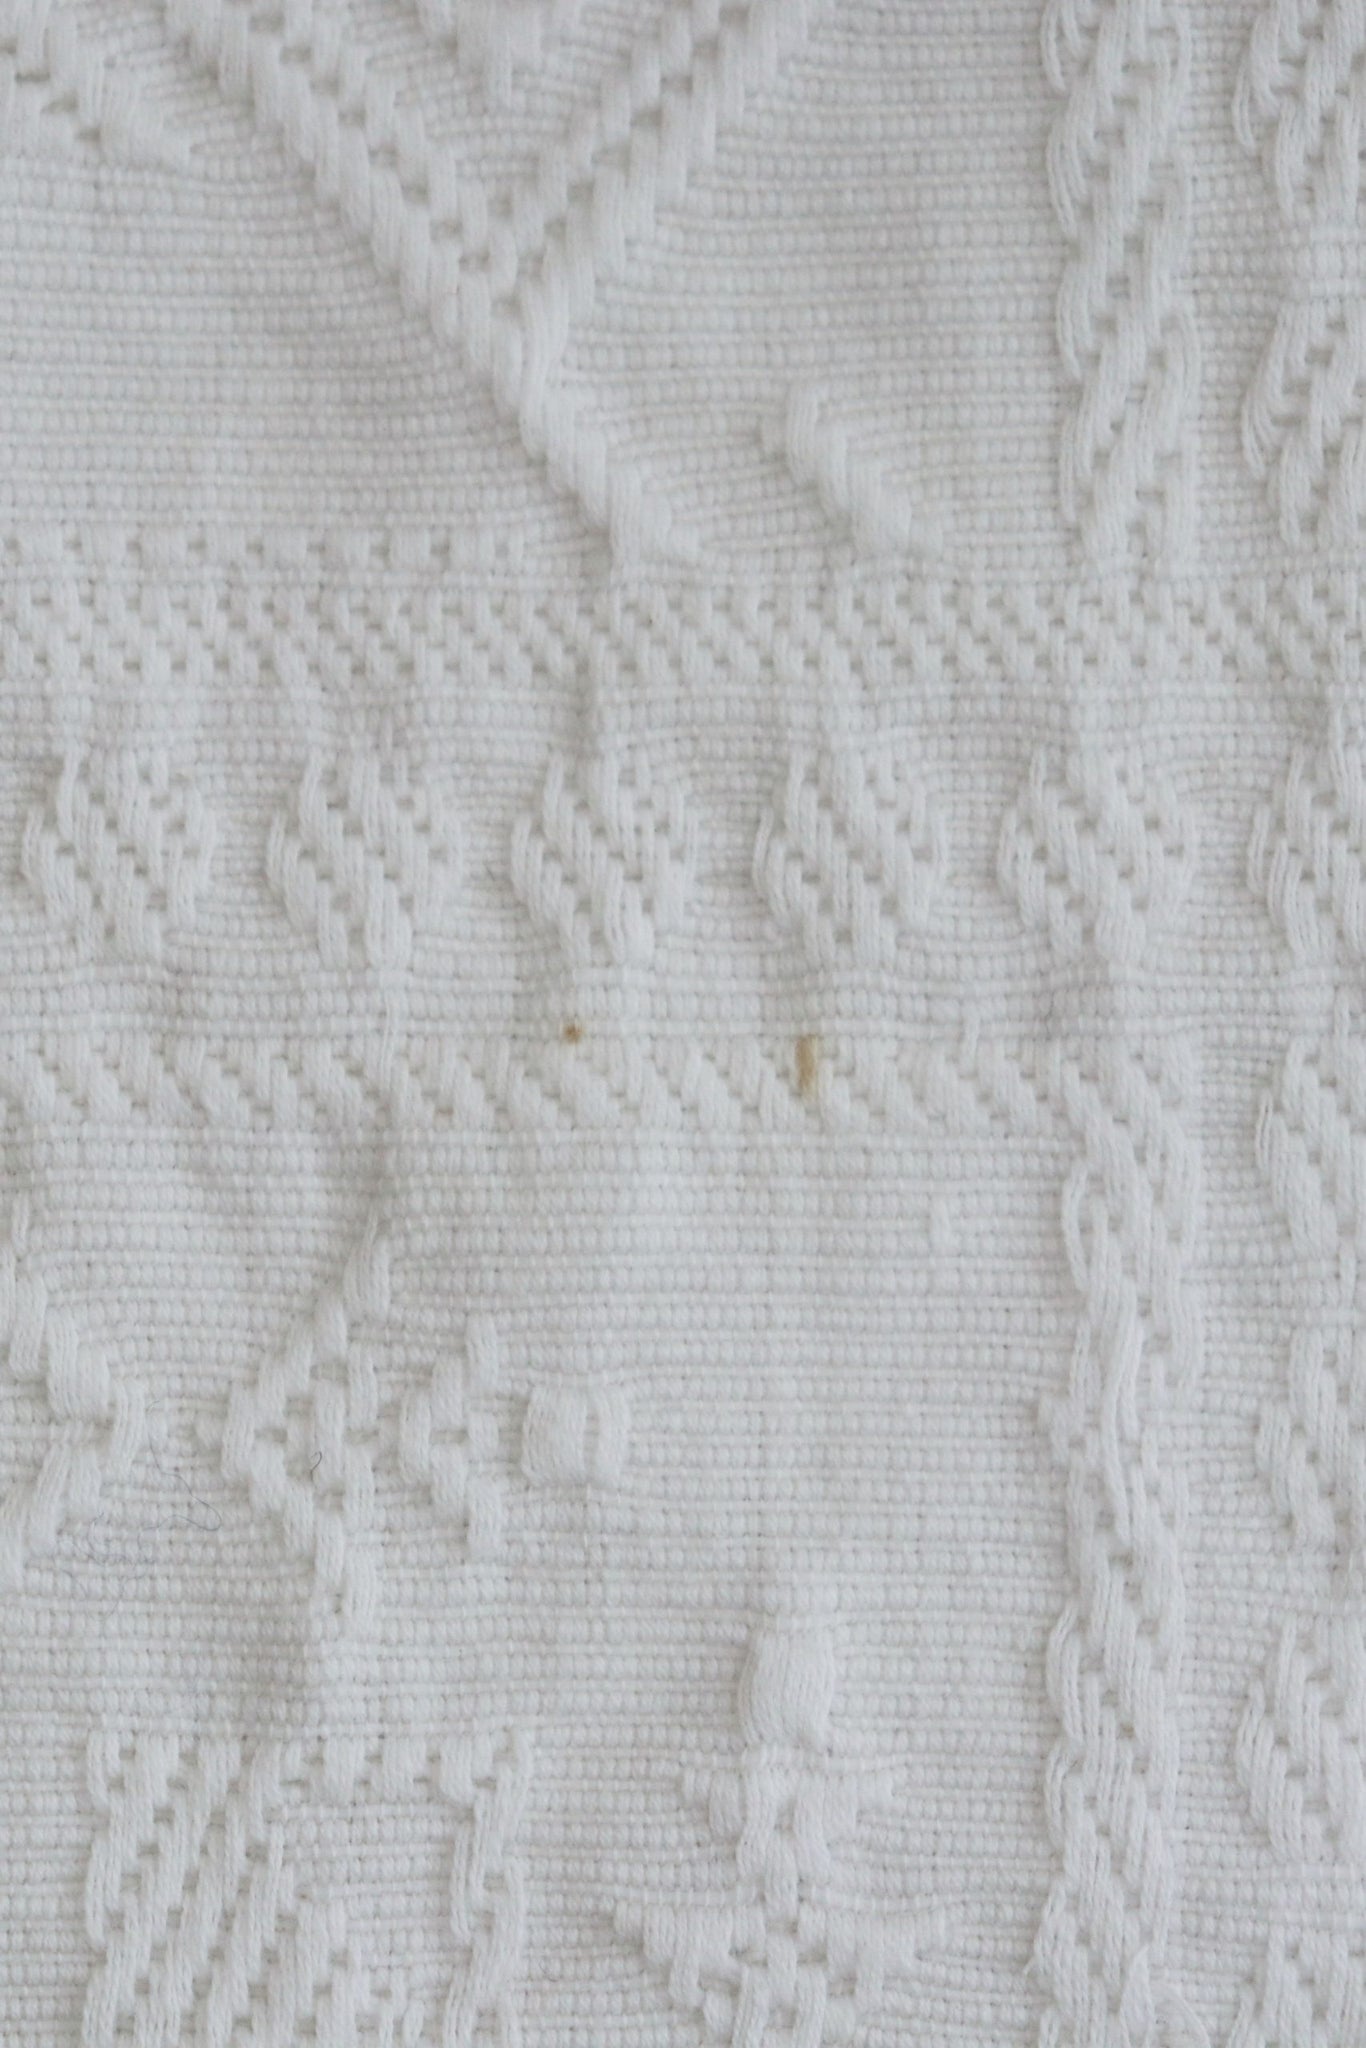 1930s Cotton fringed Blanket White